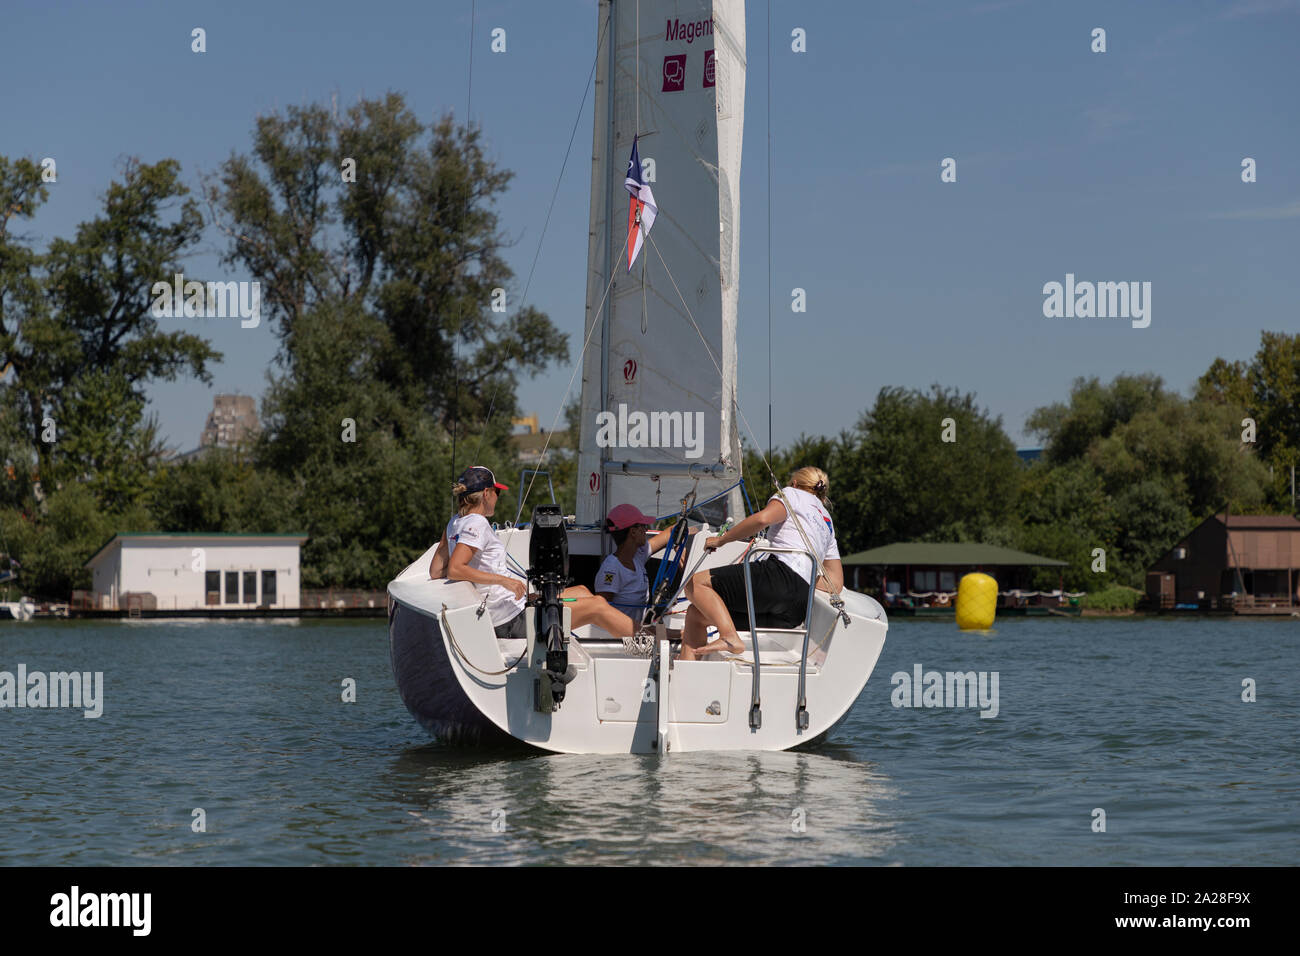 Belgrado, Serbia, 18 agosto 2019: Equipaggio femminile che gareggia nella regata di vela Micro Class sul fiume Sava Foto Stock